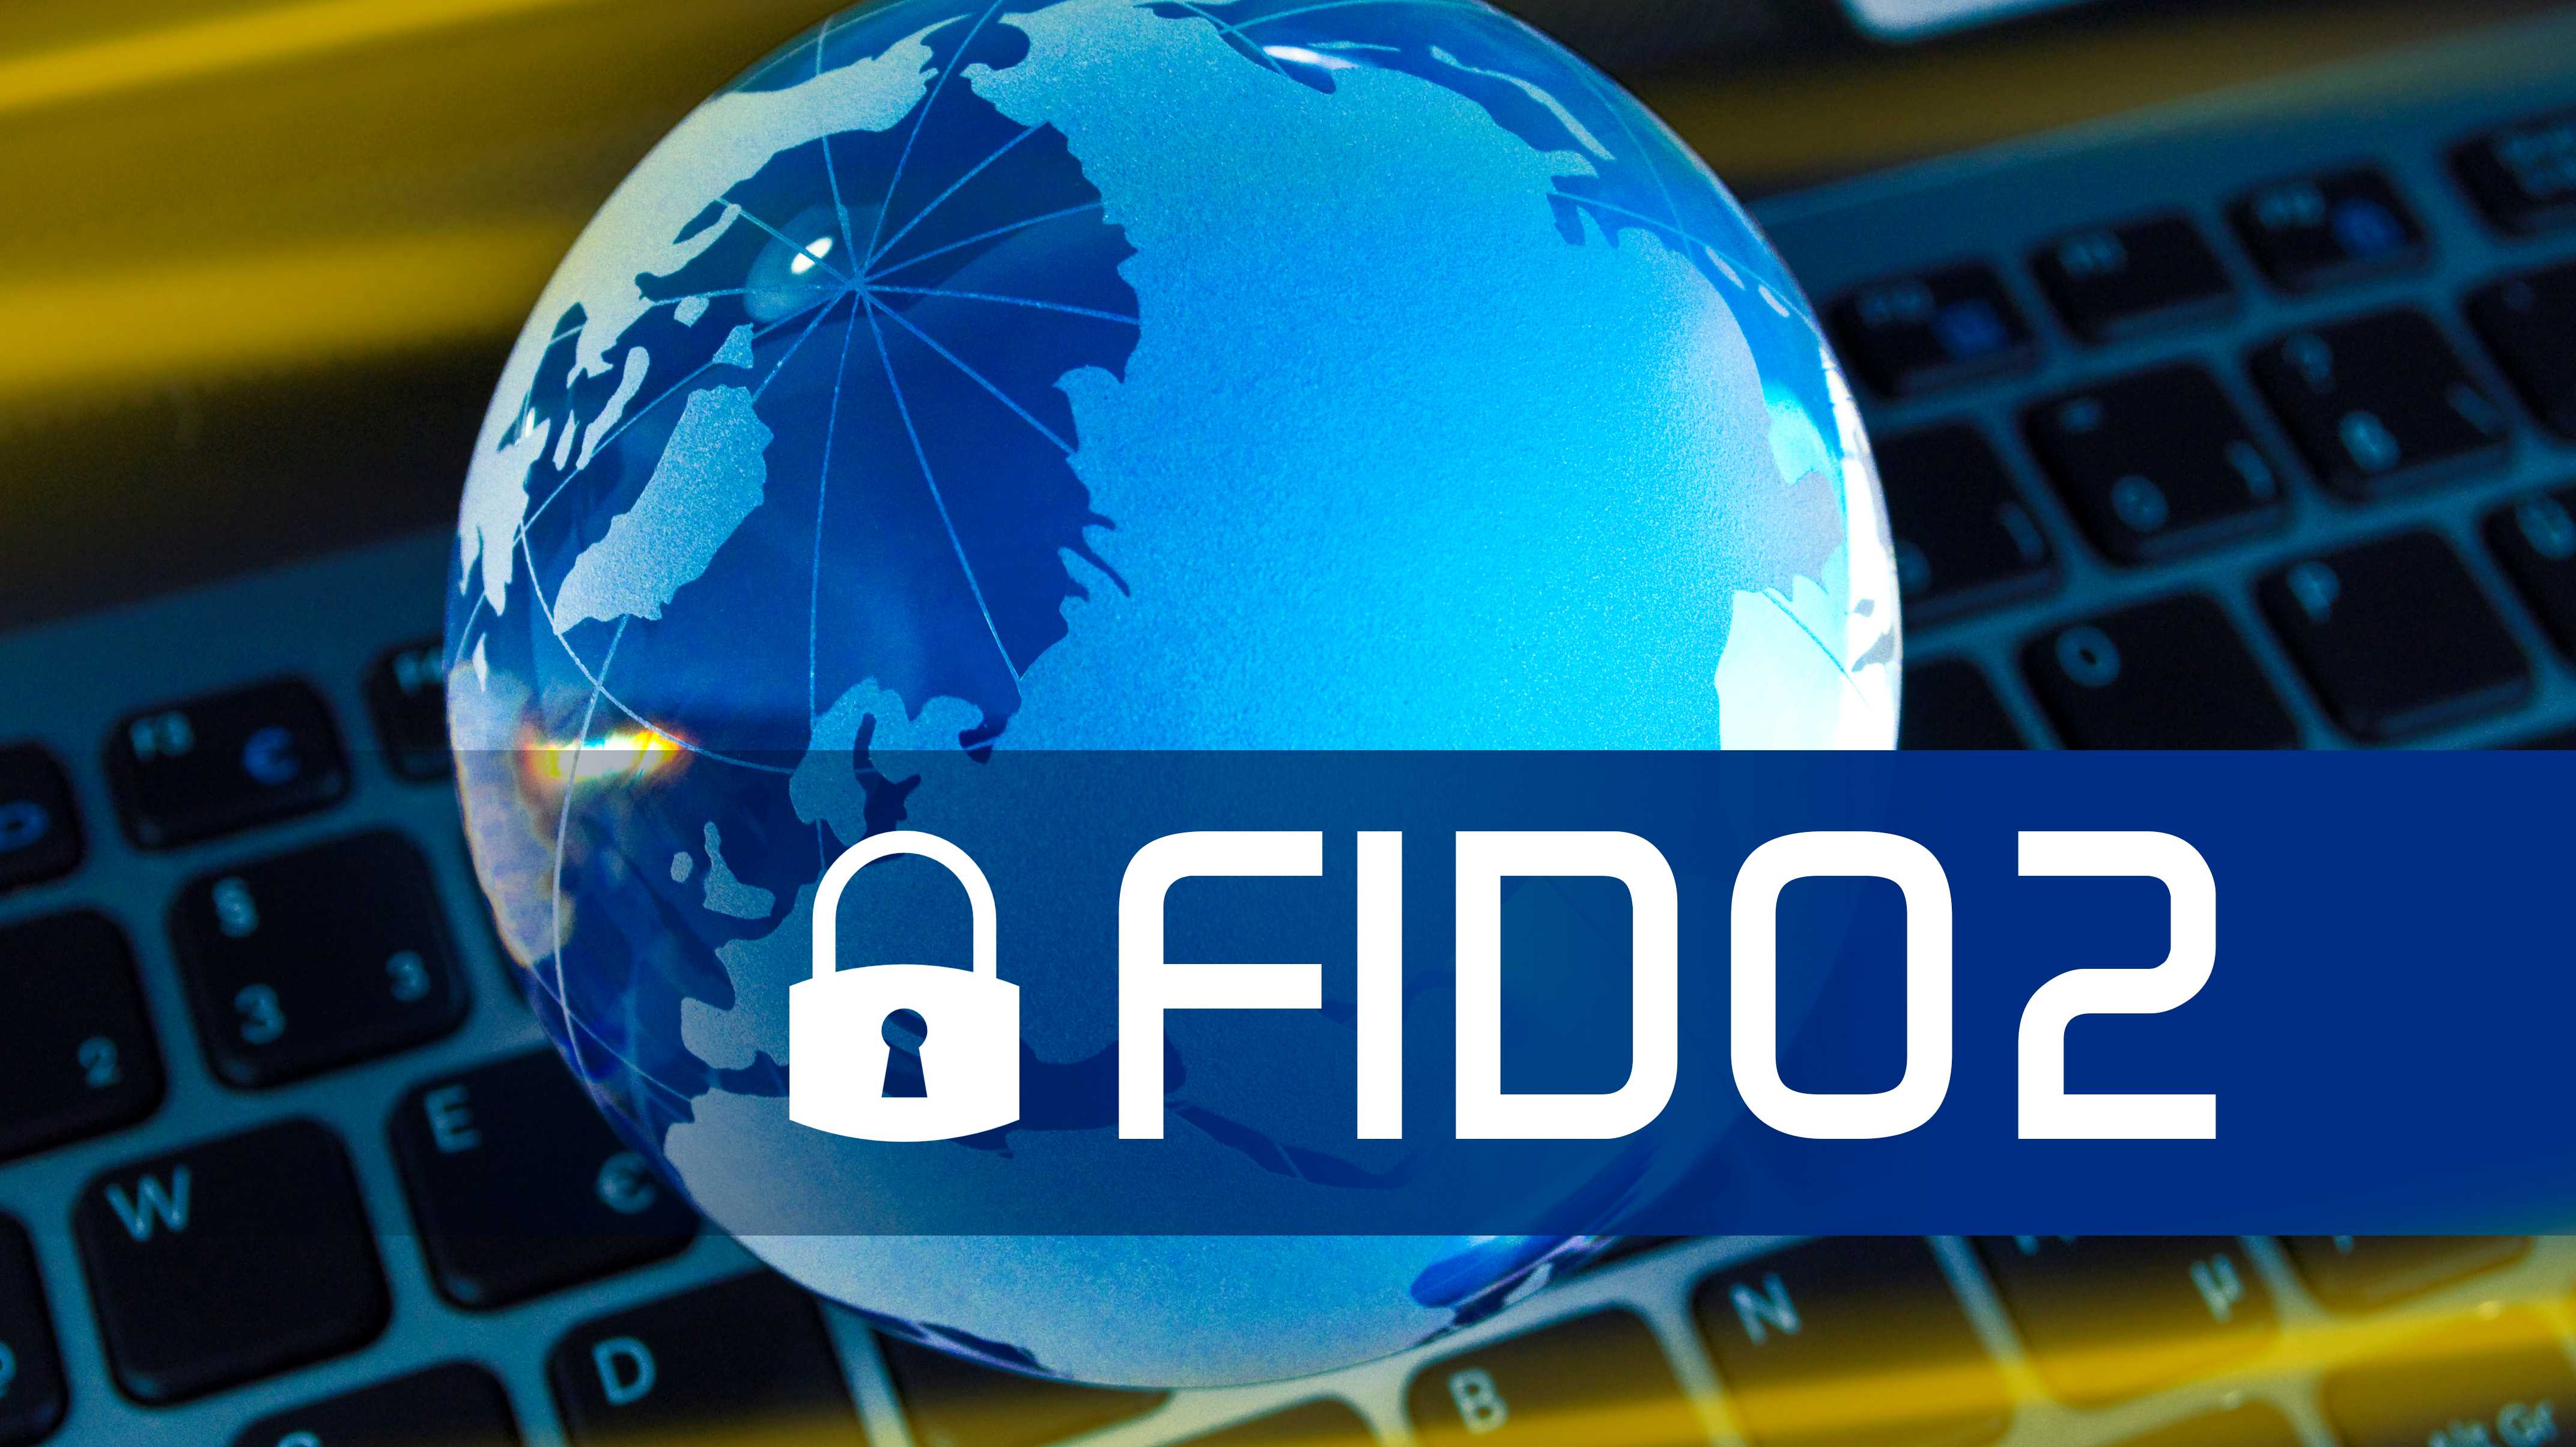 Symbolbild mit Schriftzug "FIDO2"